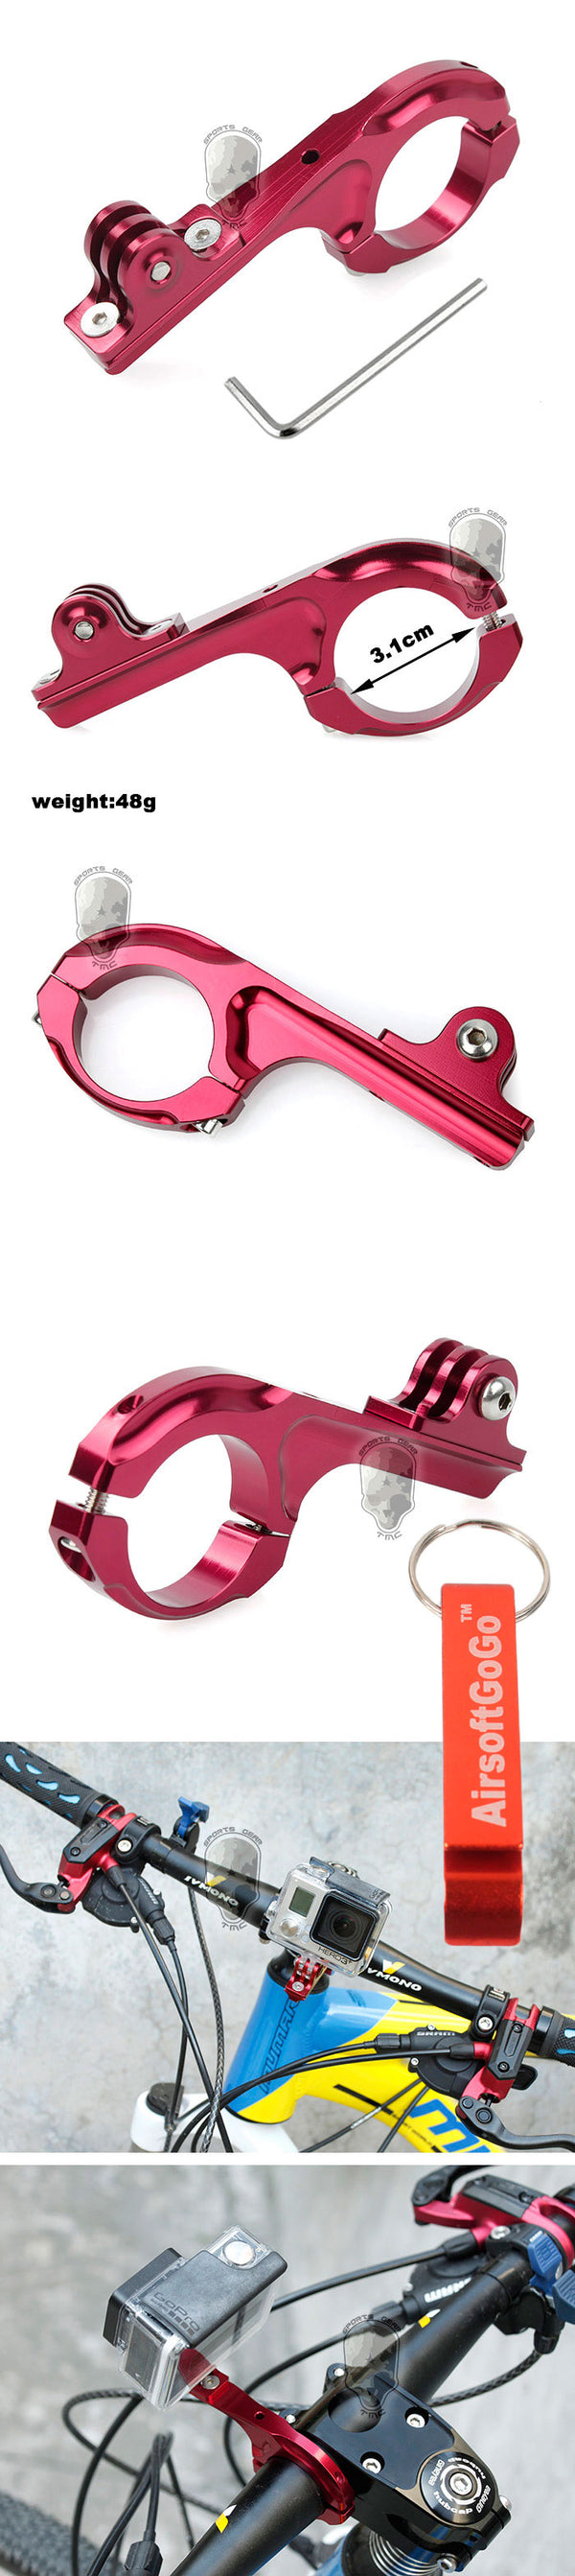 GoPro ヒーロー2/3+ 用ハンドルバー(31.8mm) 自転車/バイクオートバイ アルミハンドル マウントアダプター（赤）